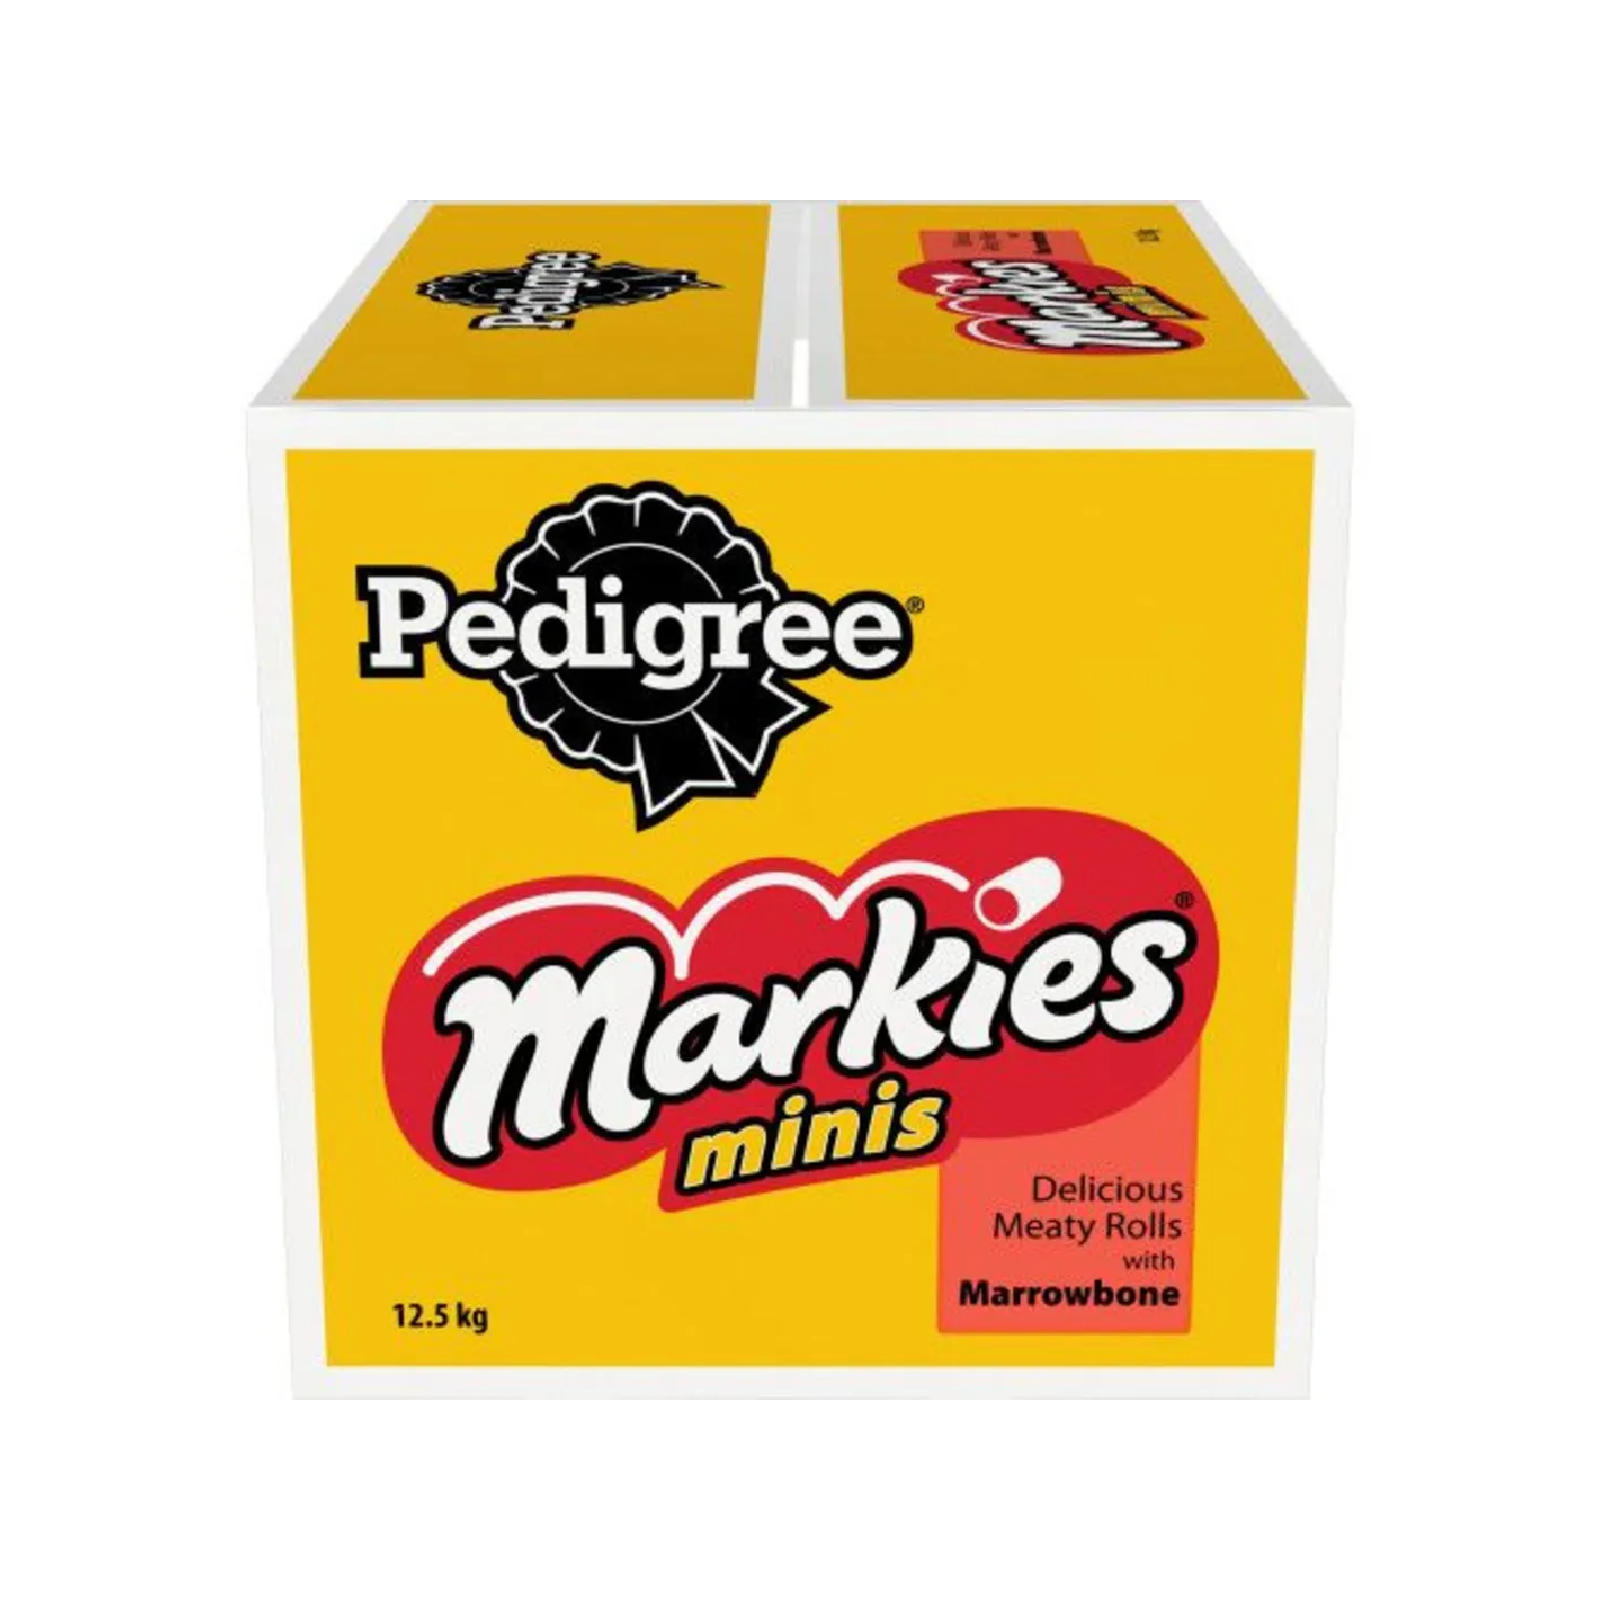 Pedigree Markies Mini 12.5kg box